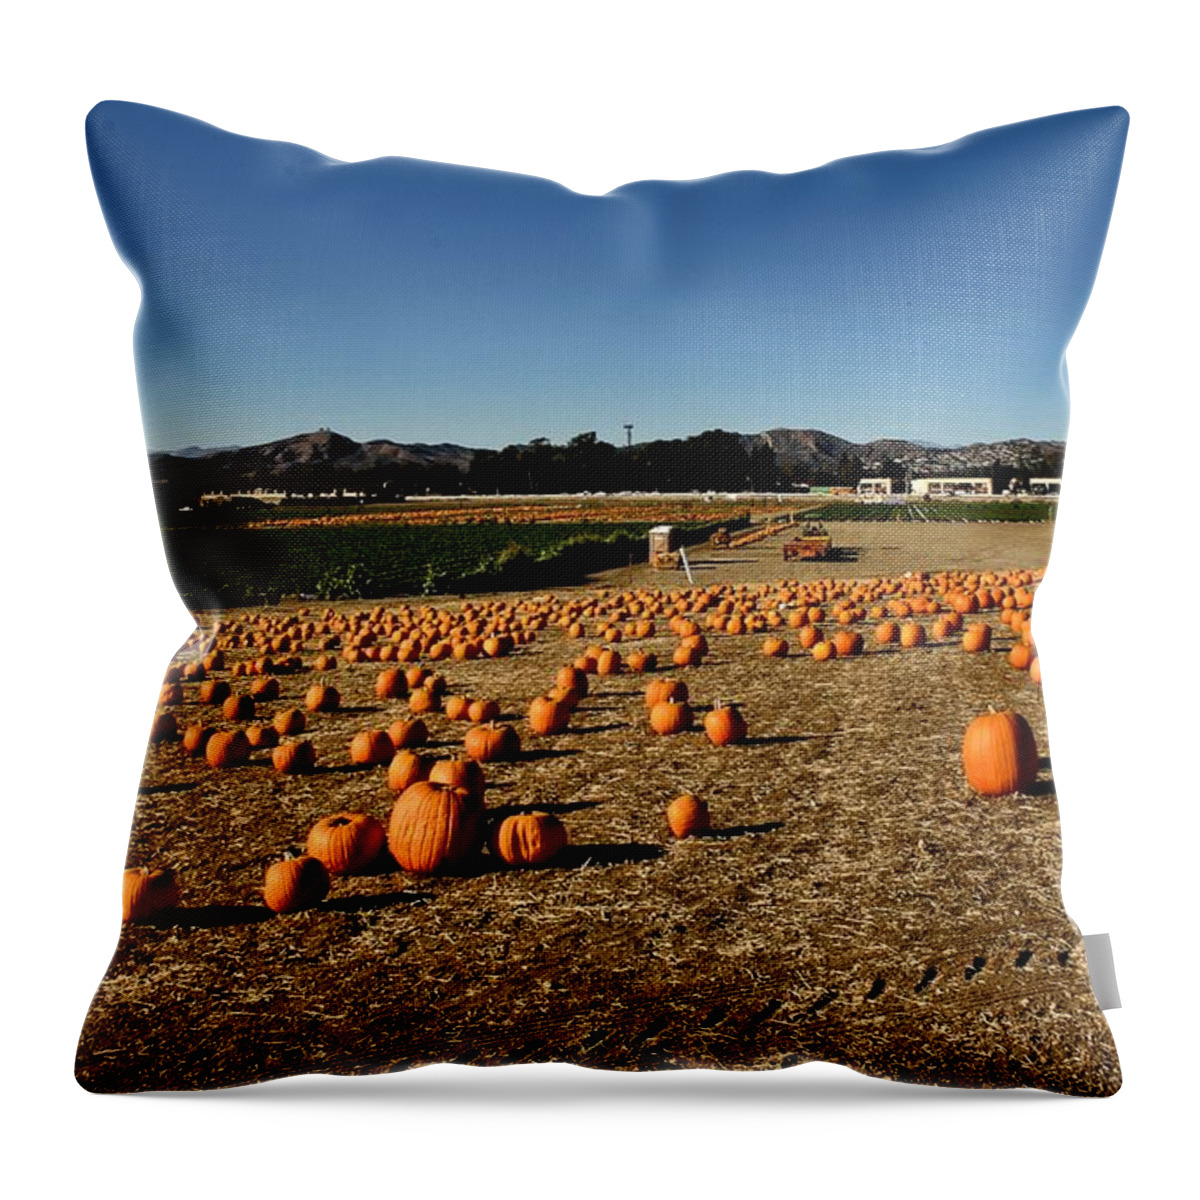 Pumpkins Throw Pillow featuring the photograph Pumpkin Field by Michael Gordon